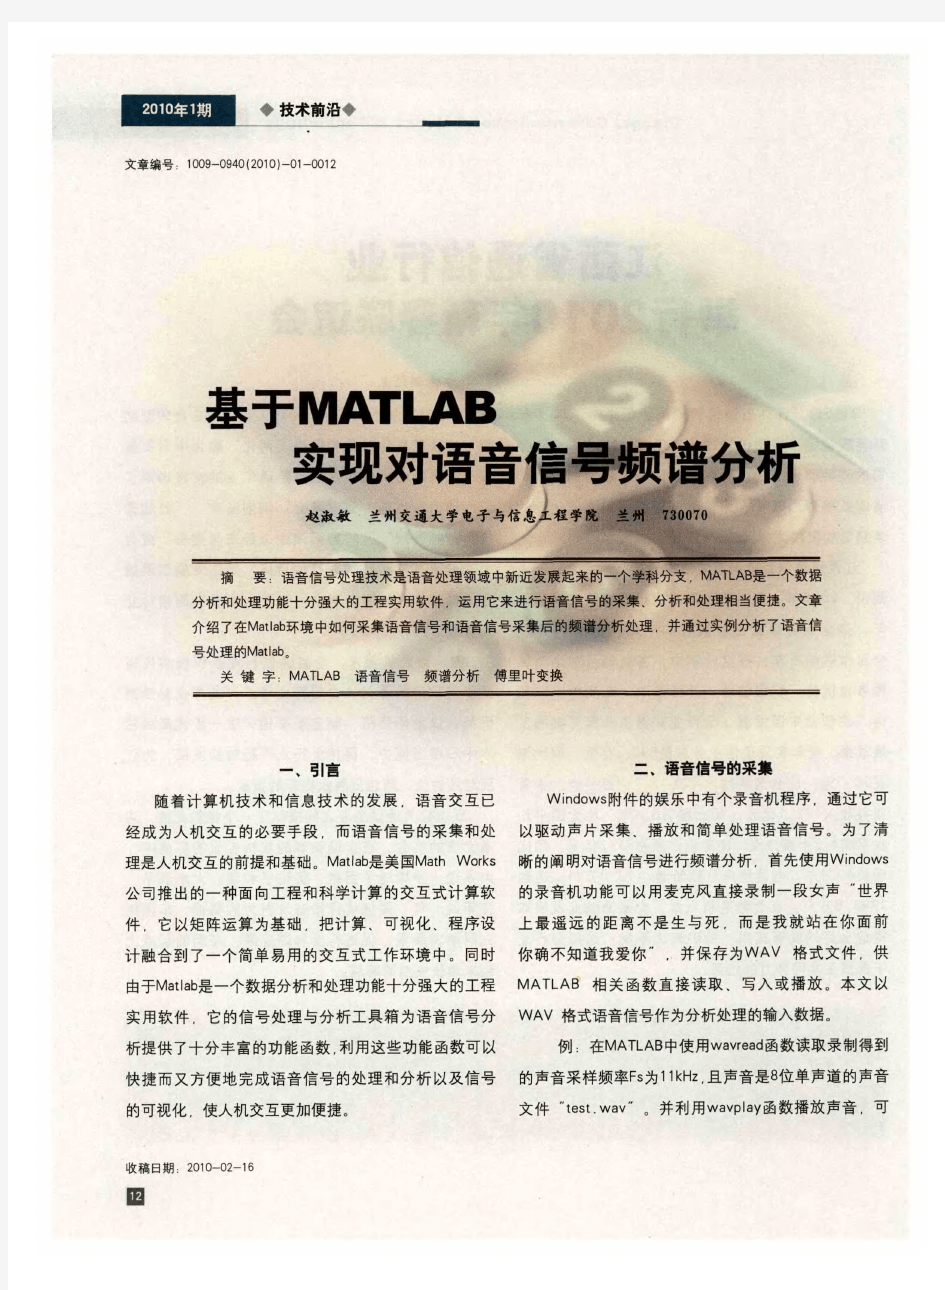 基于MATLAB实现对语音信号频谱分析